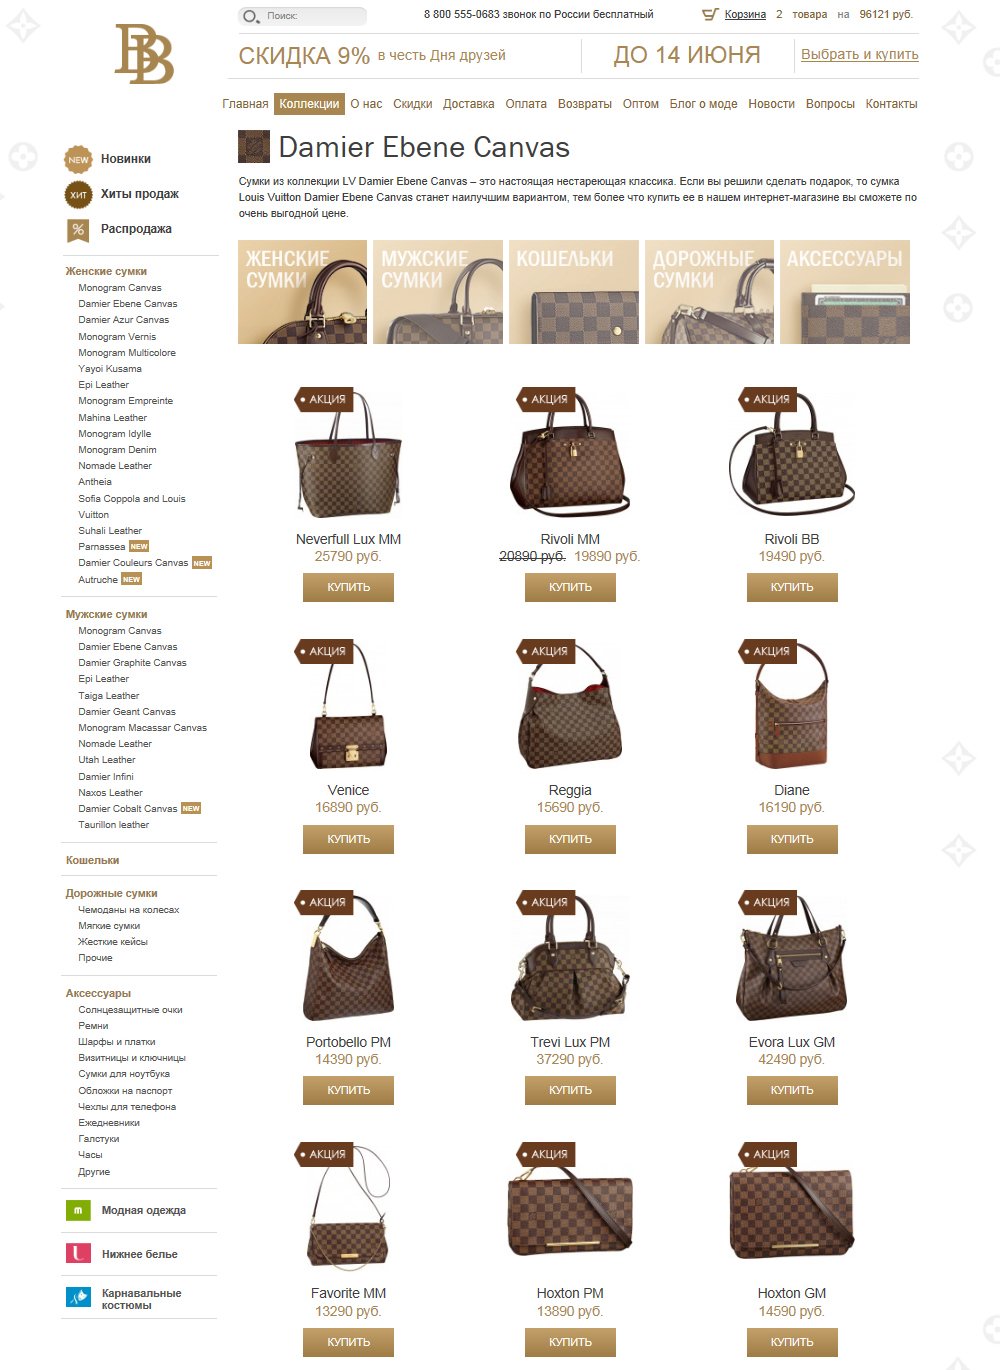 Страница коллекции на сайте интернет-магазина BrandBags.ru